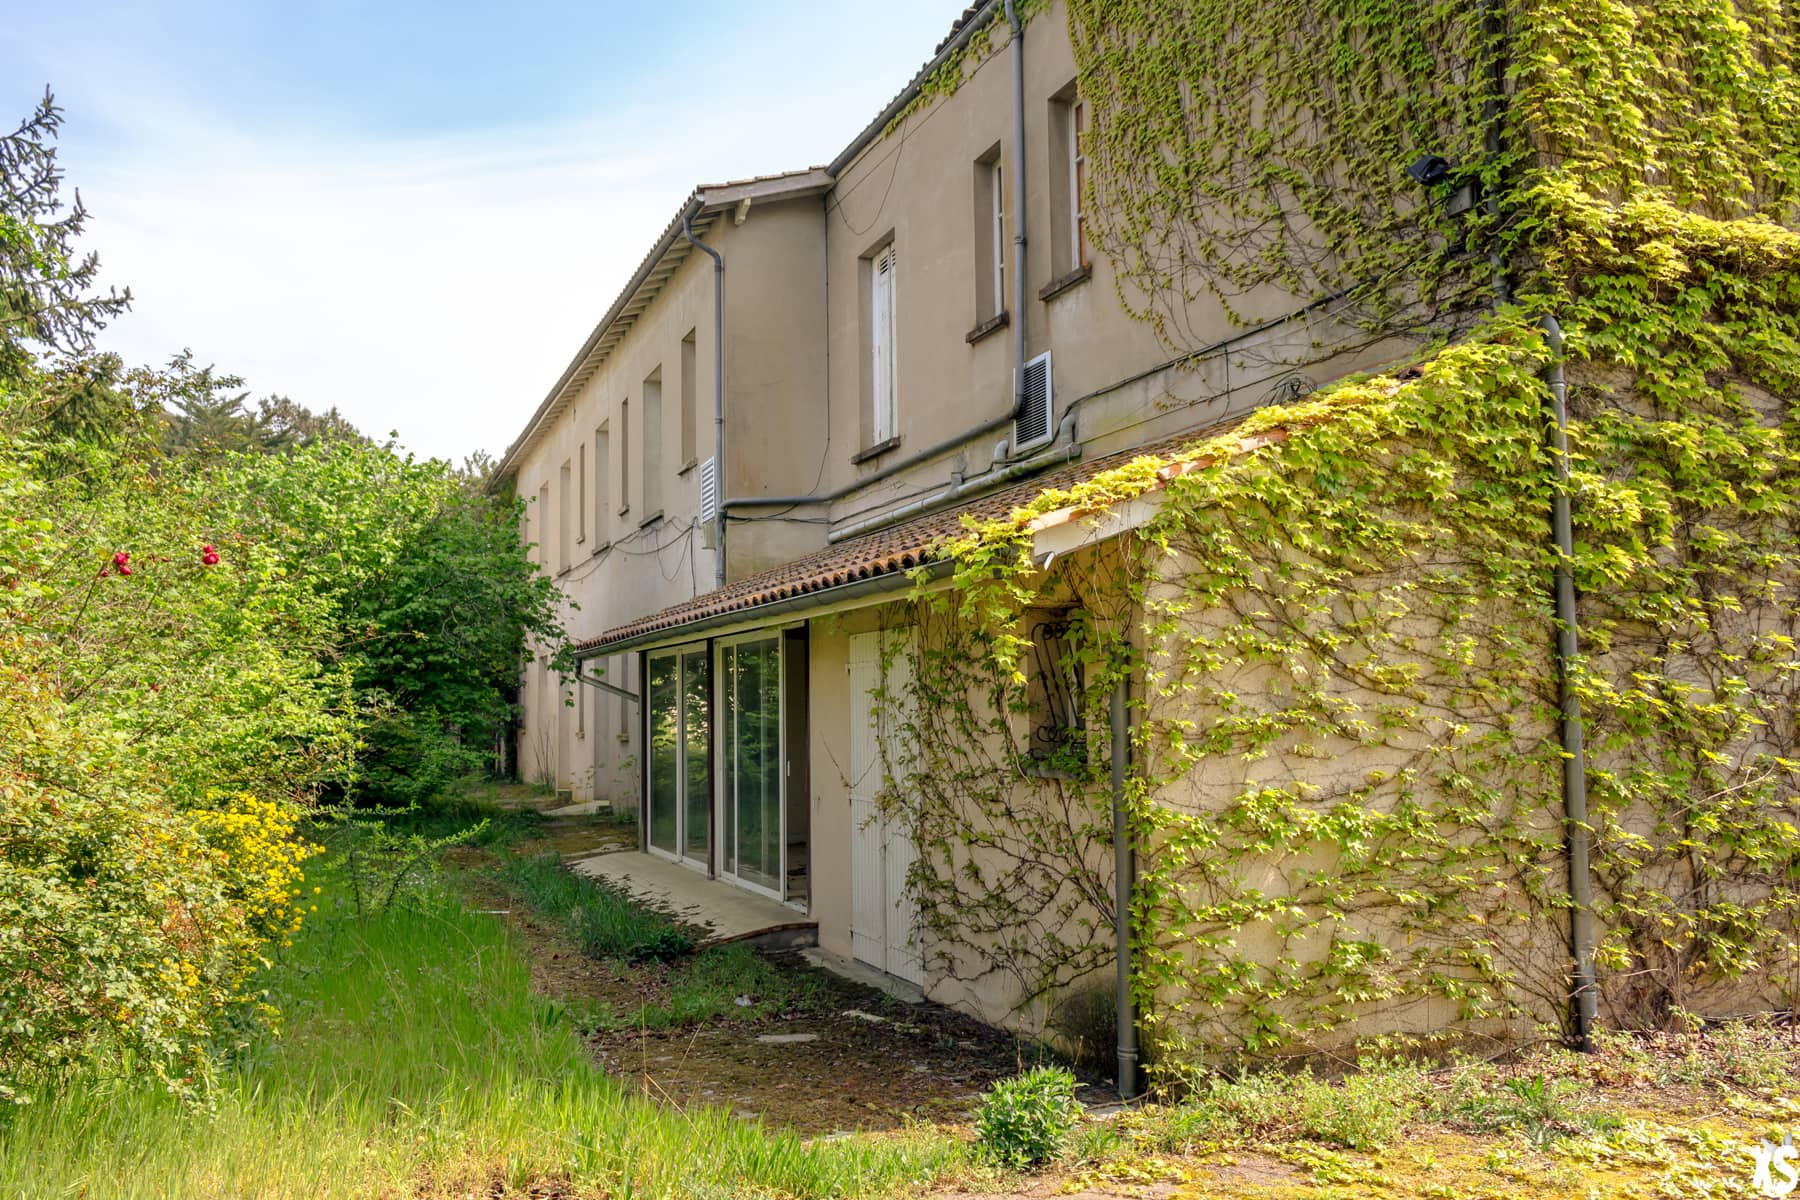 Maison de retraite abandonnée située à Gradignan en Gironde | urbexsession.com/maison-retraite-andrei-tchikatilo | Urbex France Gironde